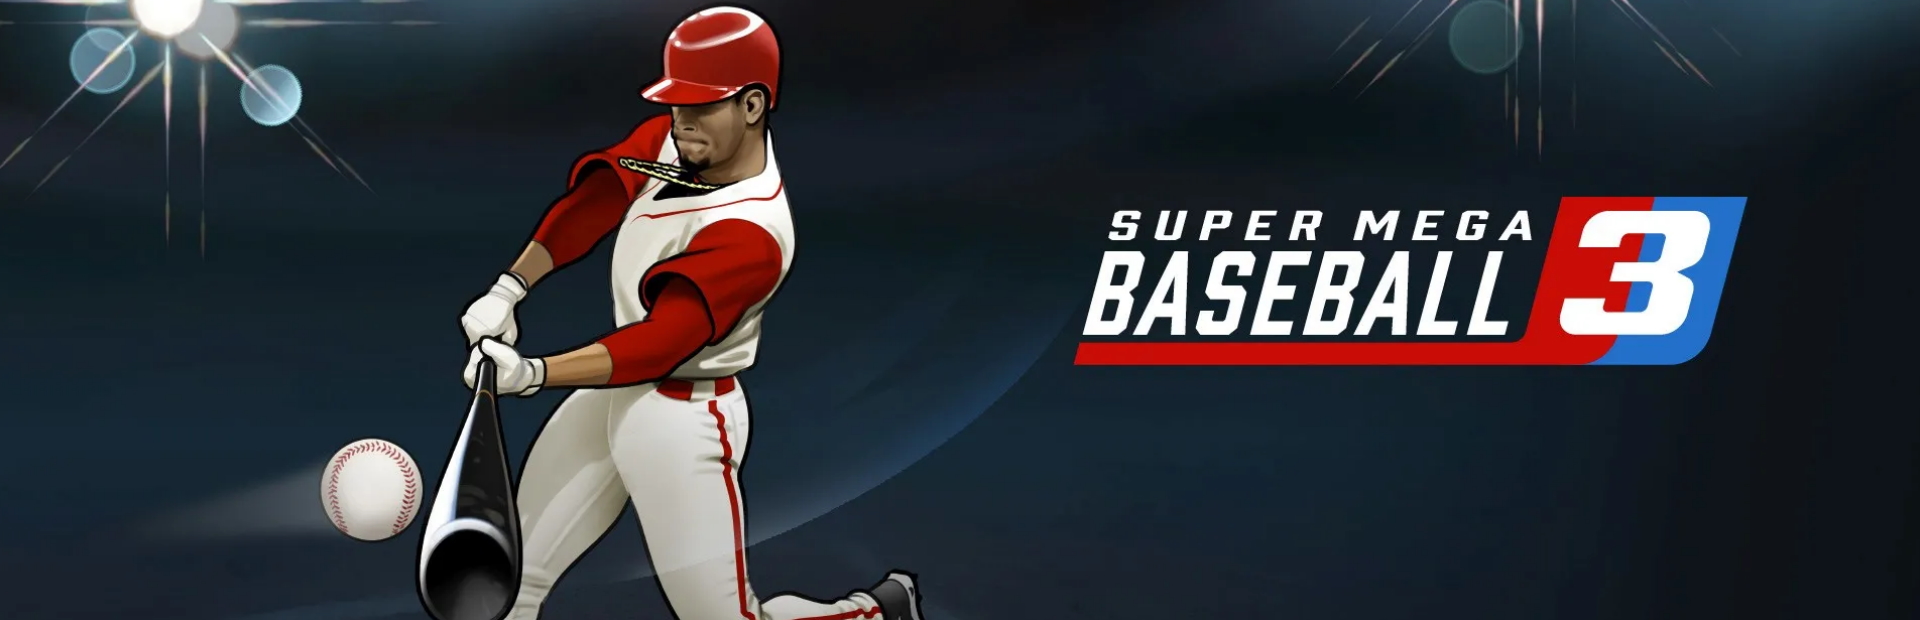 دانلود بازی Super Mega Baseball 3 برای کامپیوتر | گیمباتو